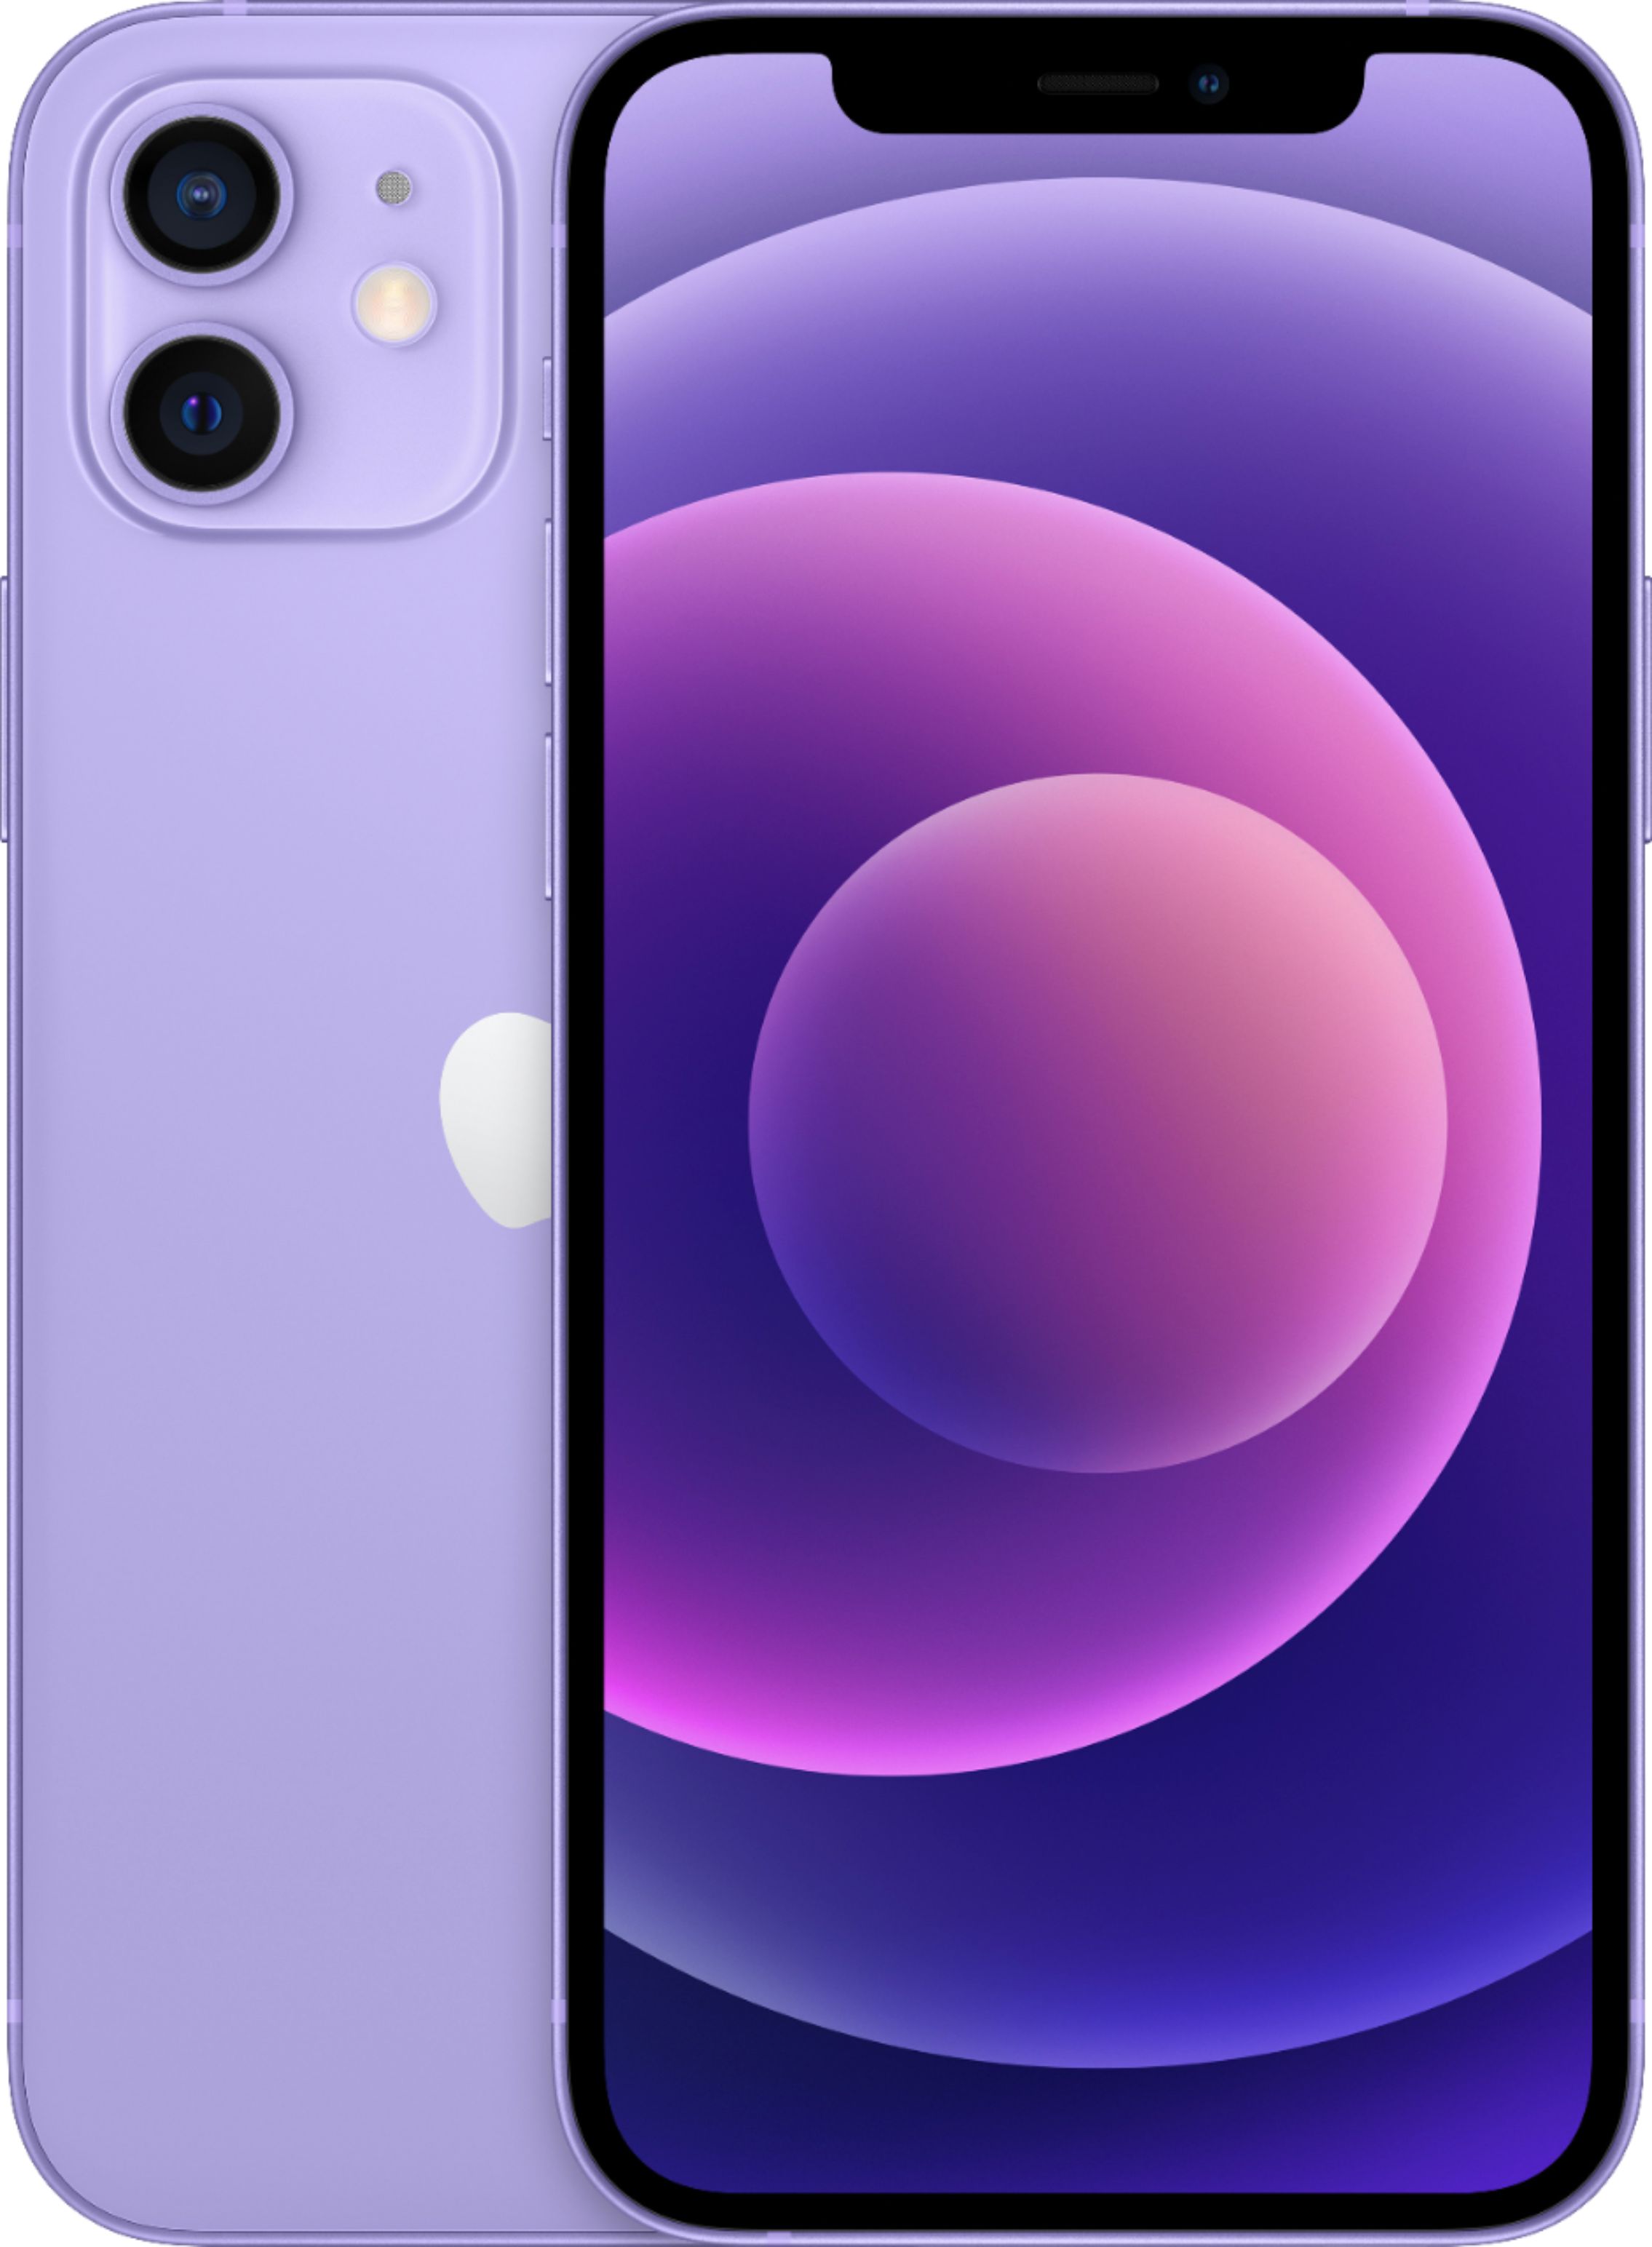 Apple iPhone 12 mini 5G 64GB Purple (AT&T) MJQ83LL/A - Best Buy